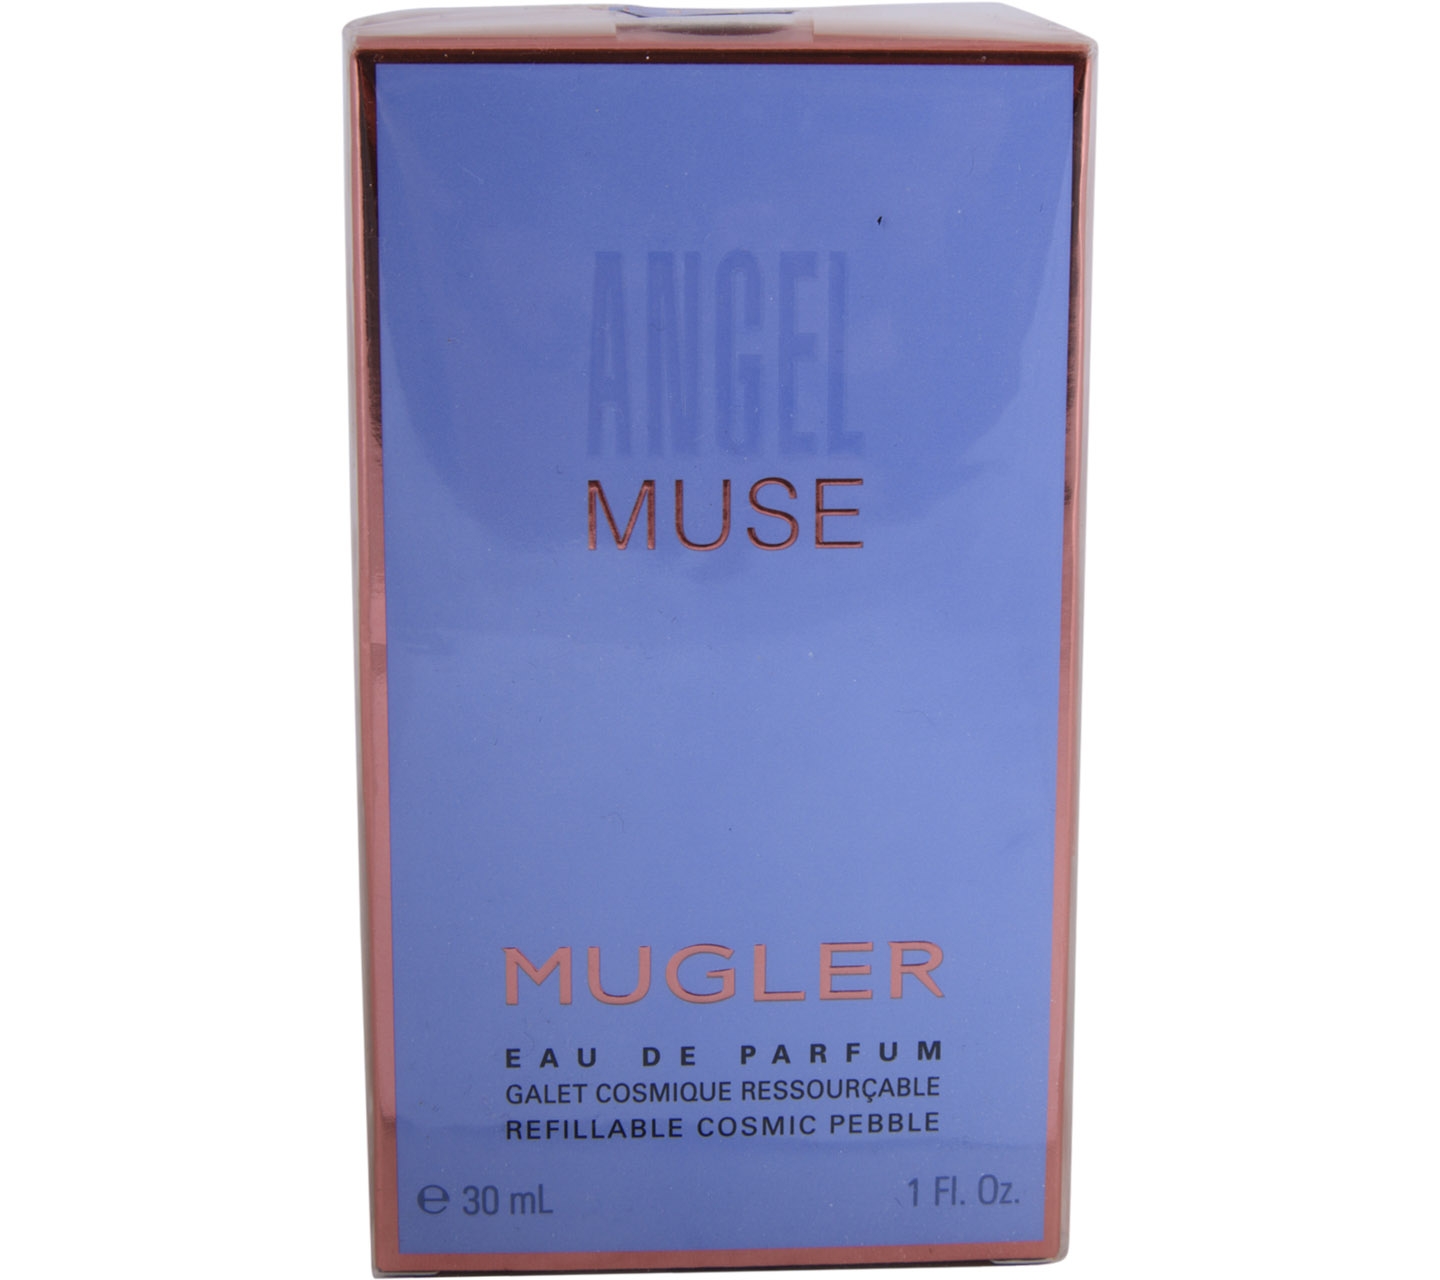 Mugler Fragrance